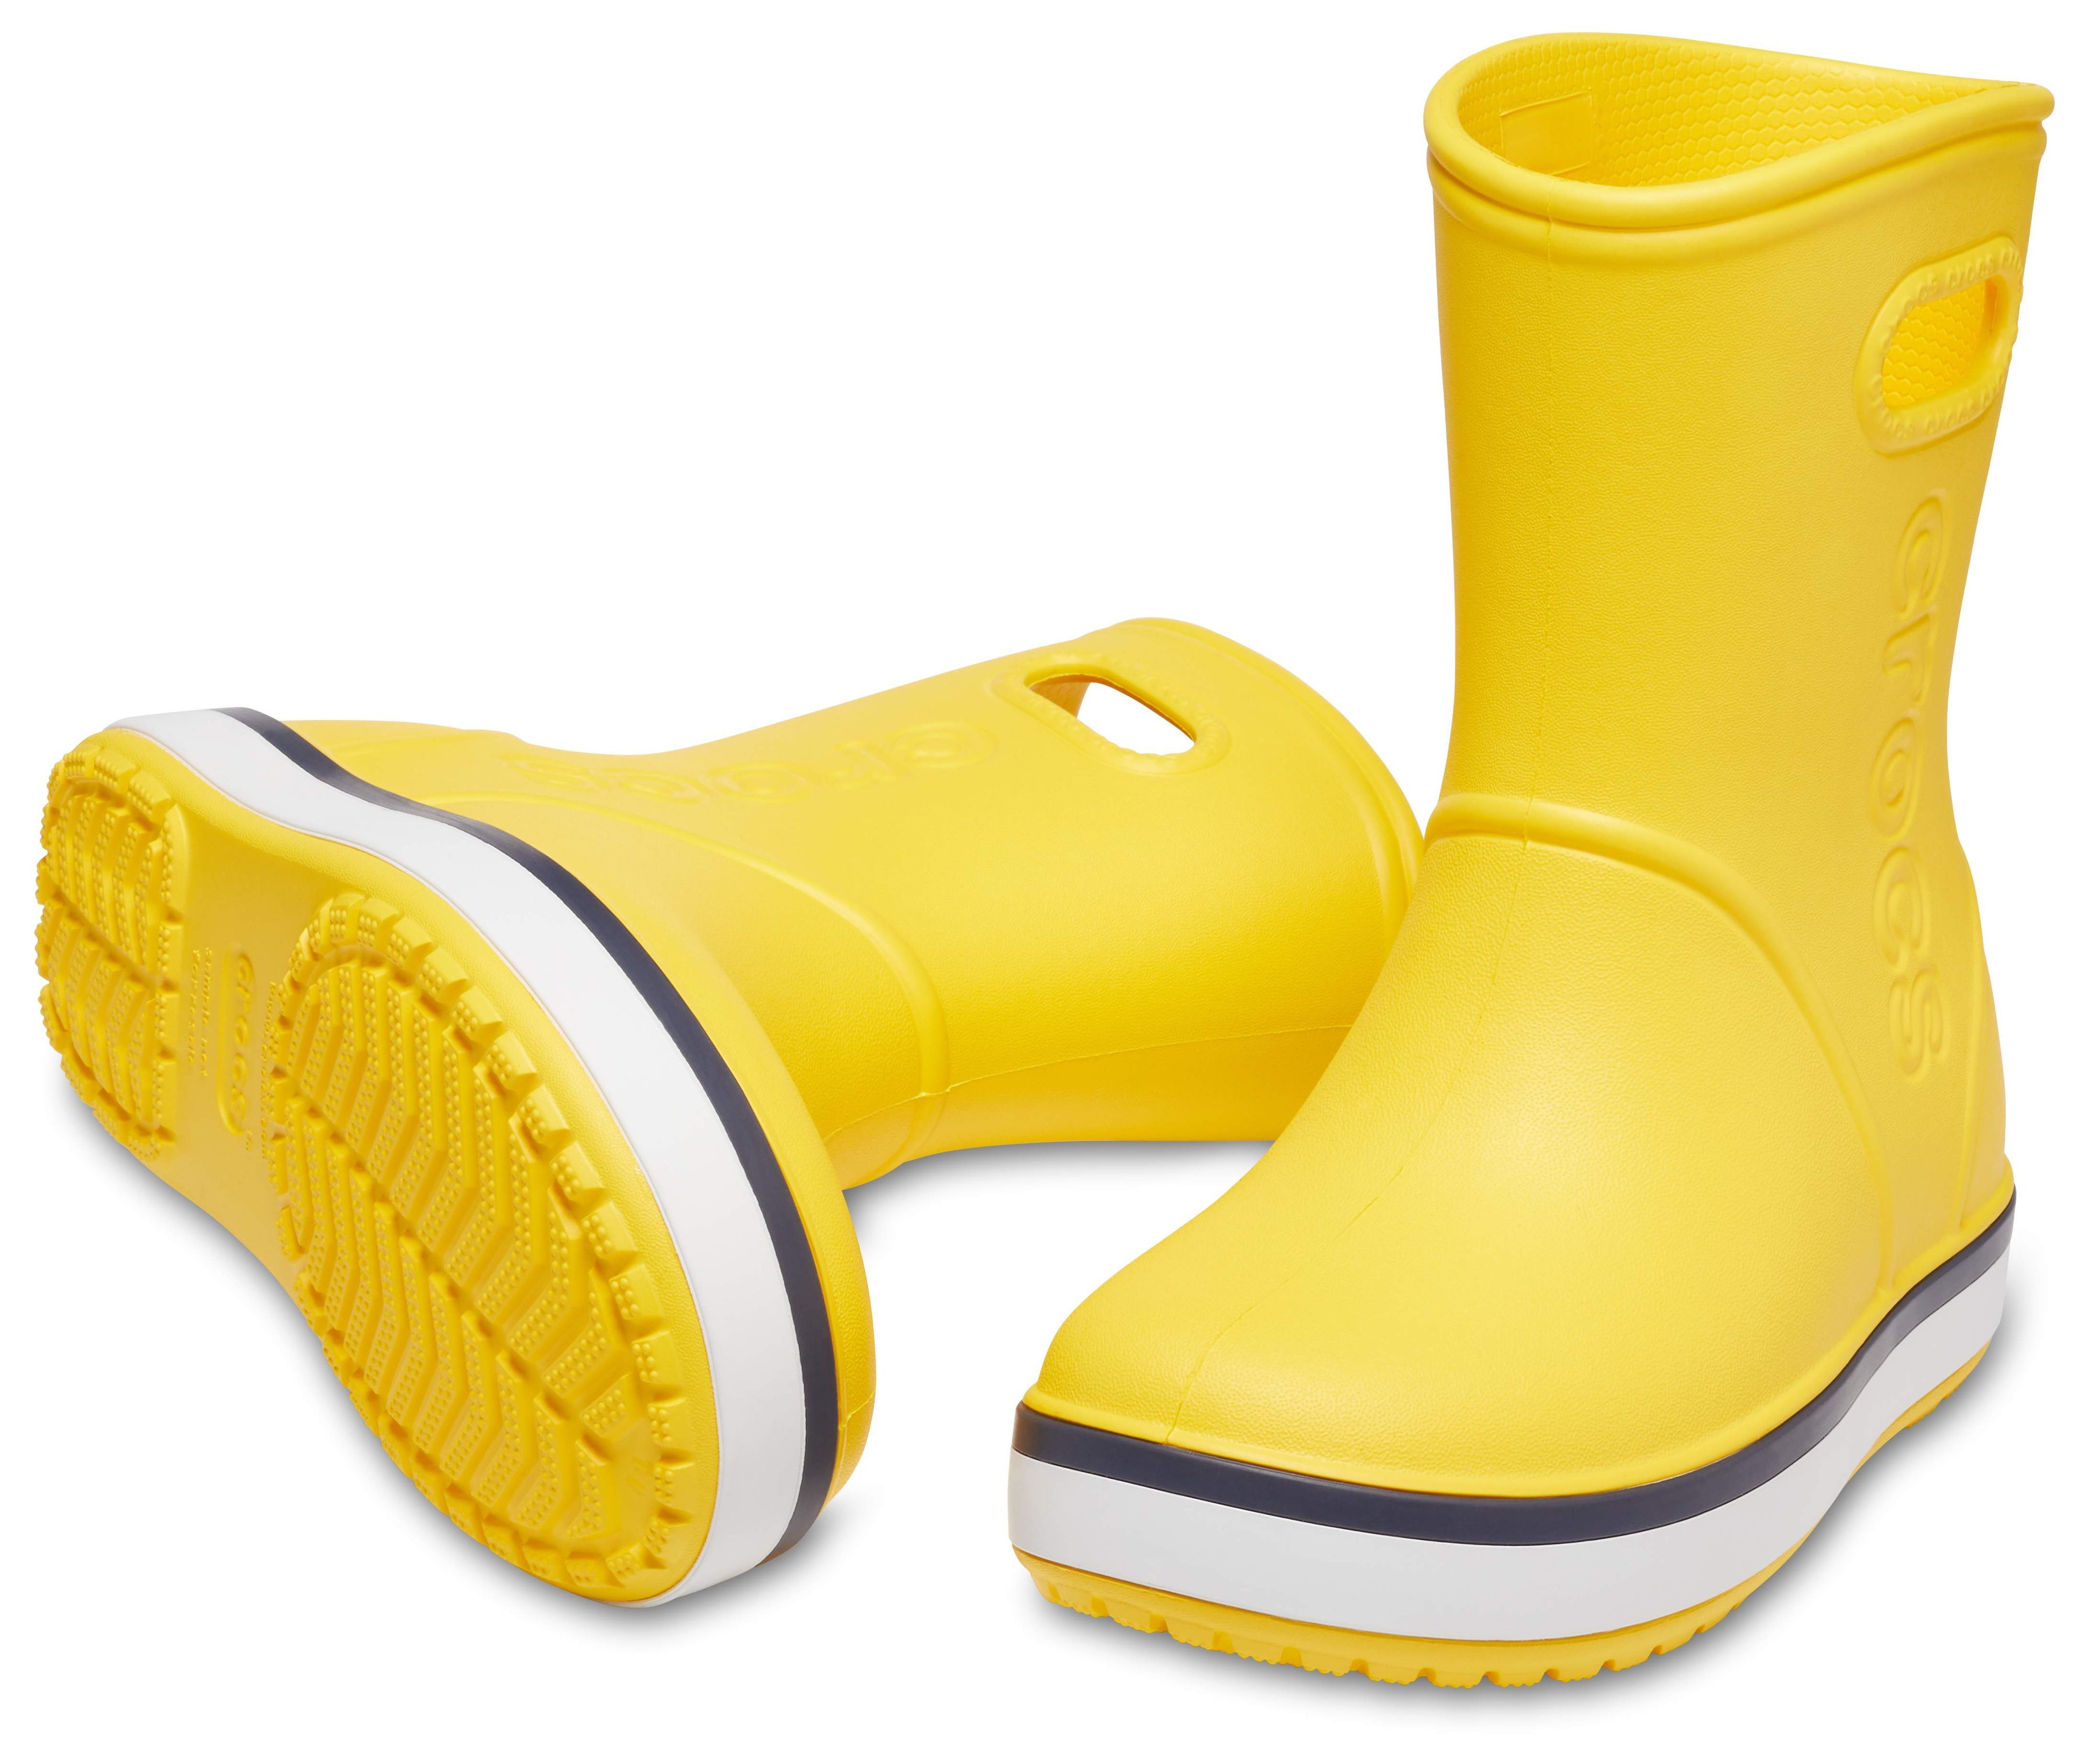 Crocs сапоги купить. Резиновые сапоги Crocs Crocband Rain Boot. Желтые сапоги крокс. Сапоги Crocband Rain Boot. Крокс желтые резиновые сапоги.